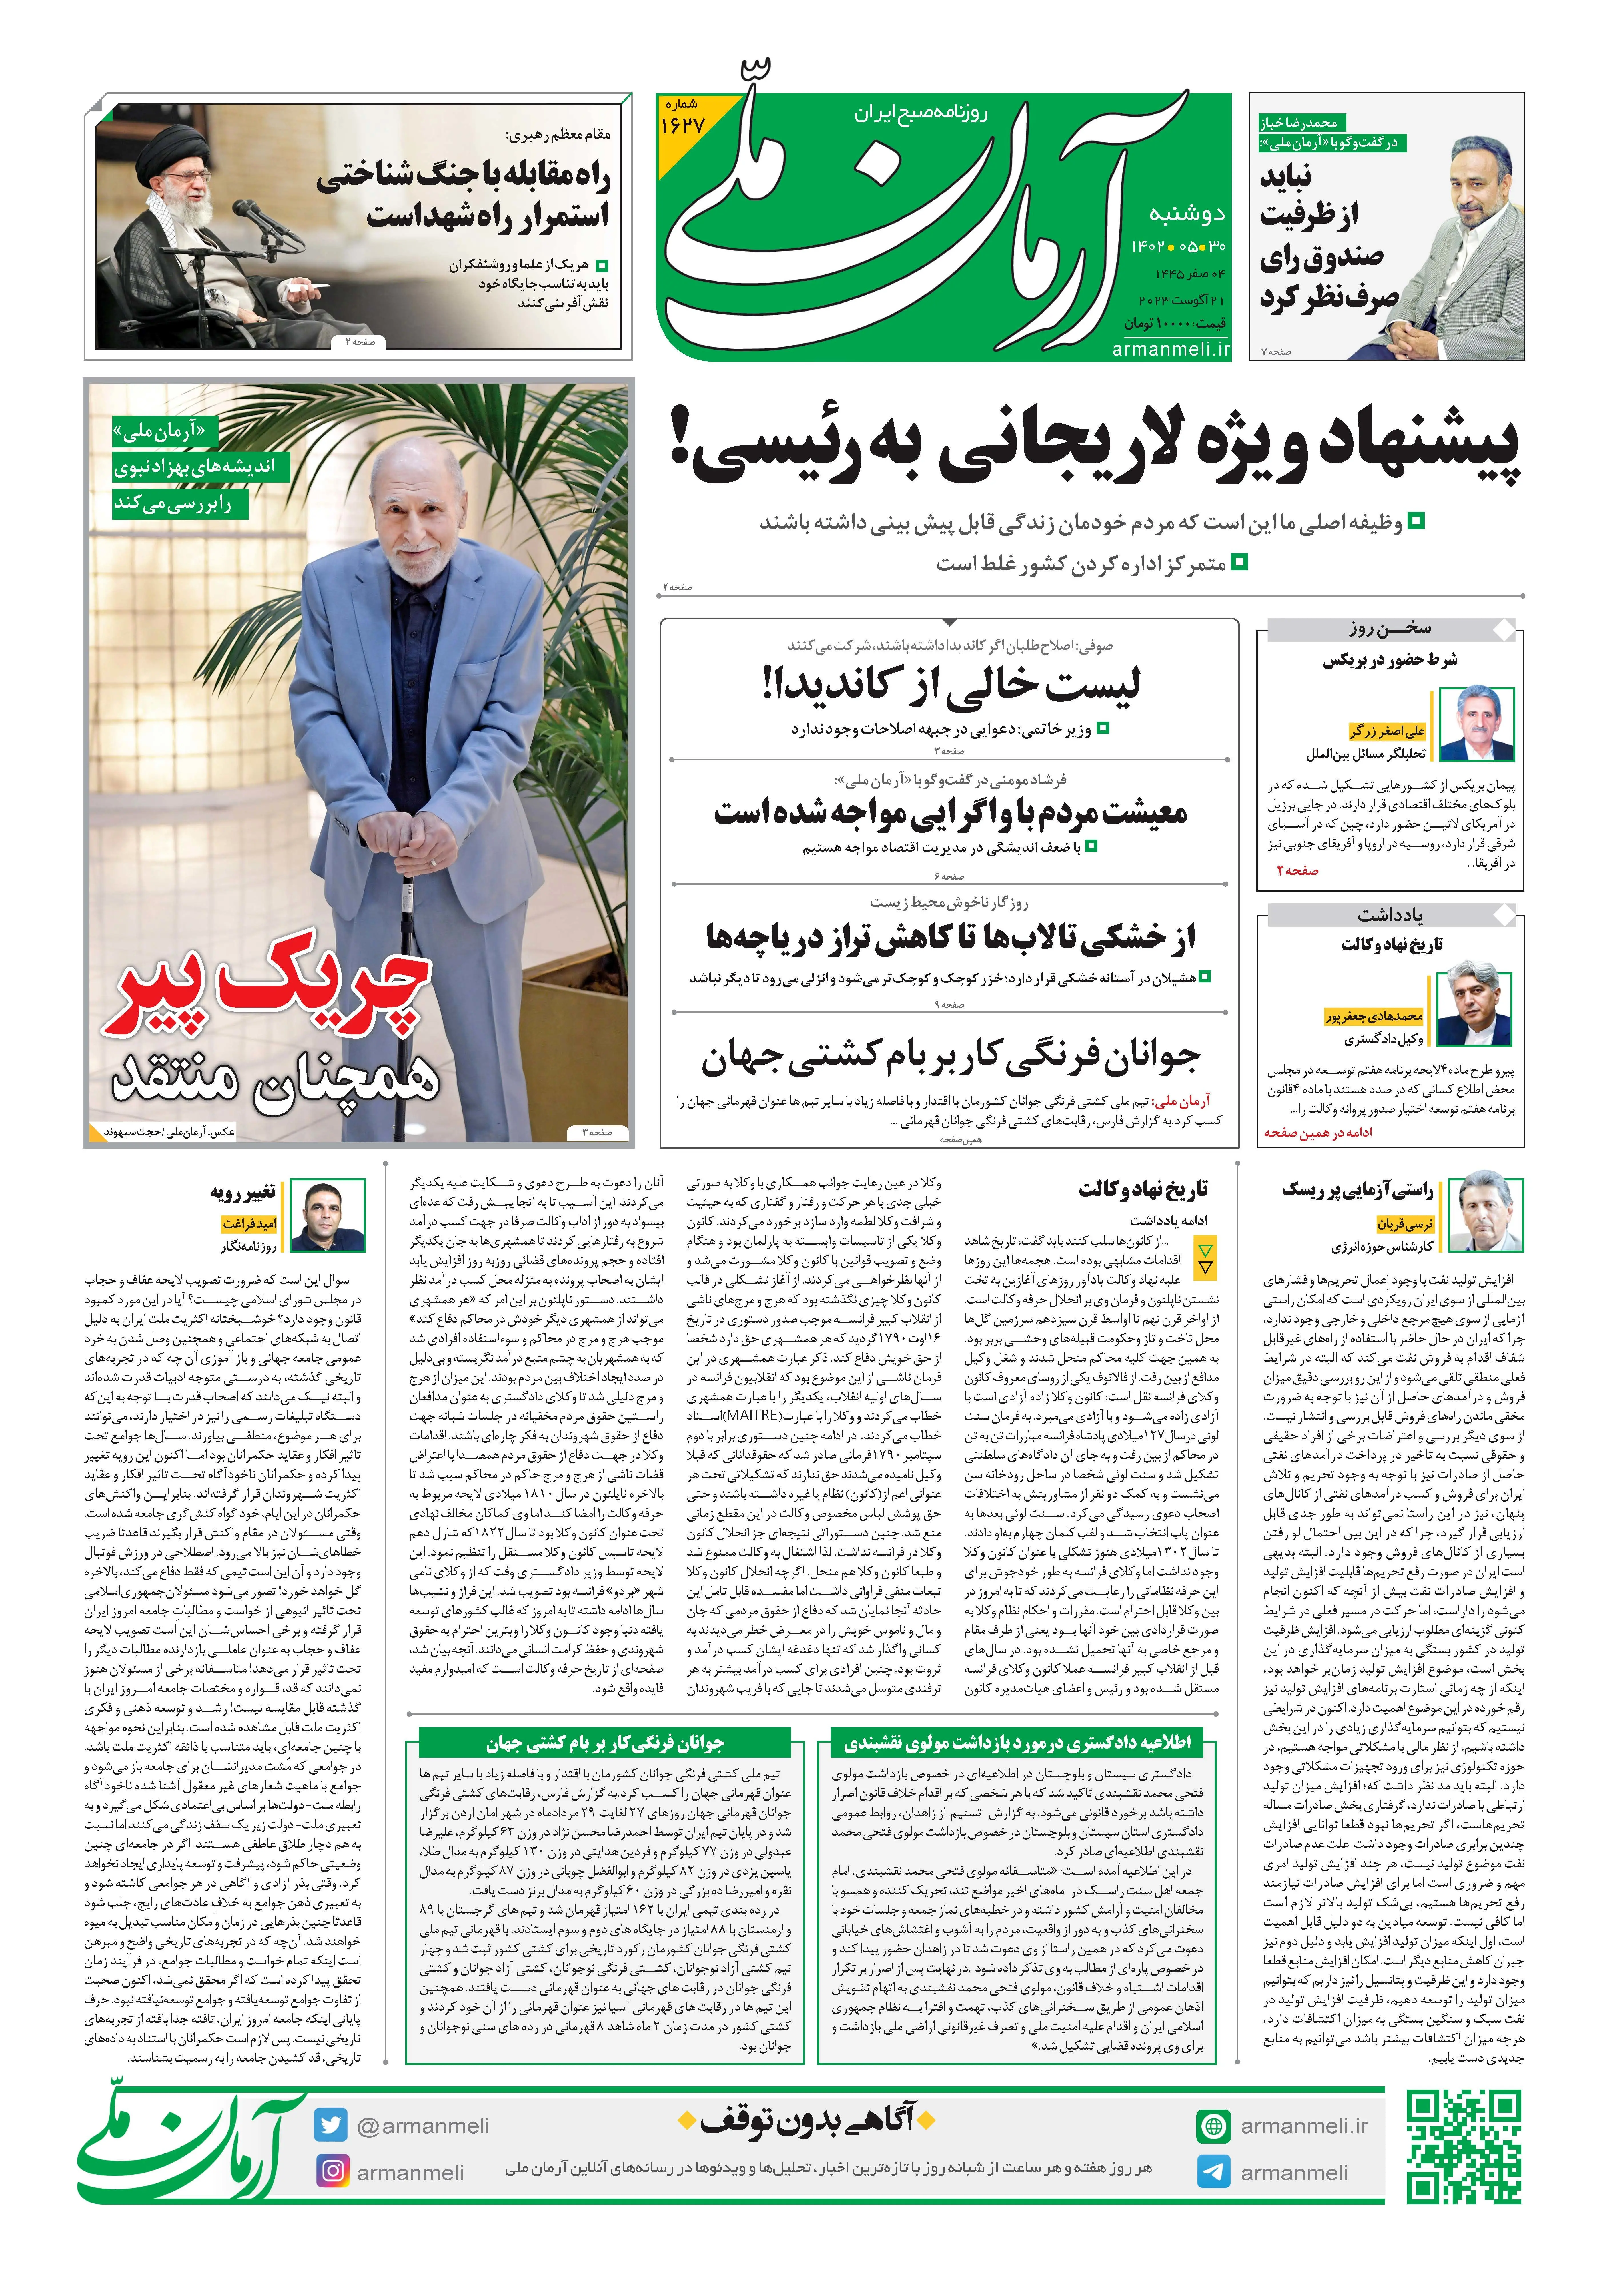 روزنامه آرمان ملی - دوشنبه 30 مرداد - شماره 1627